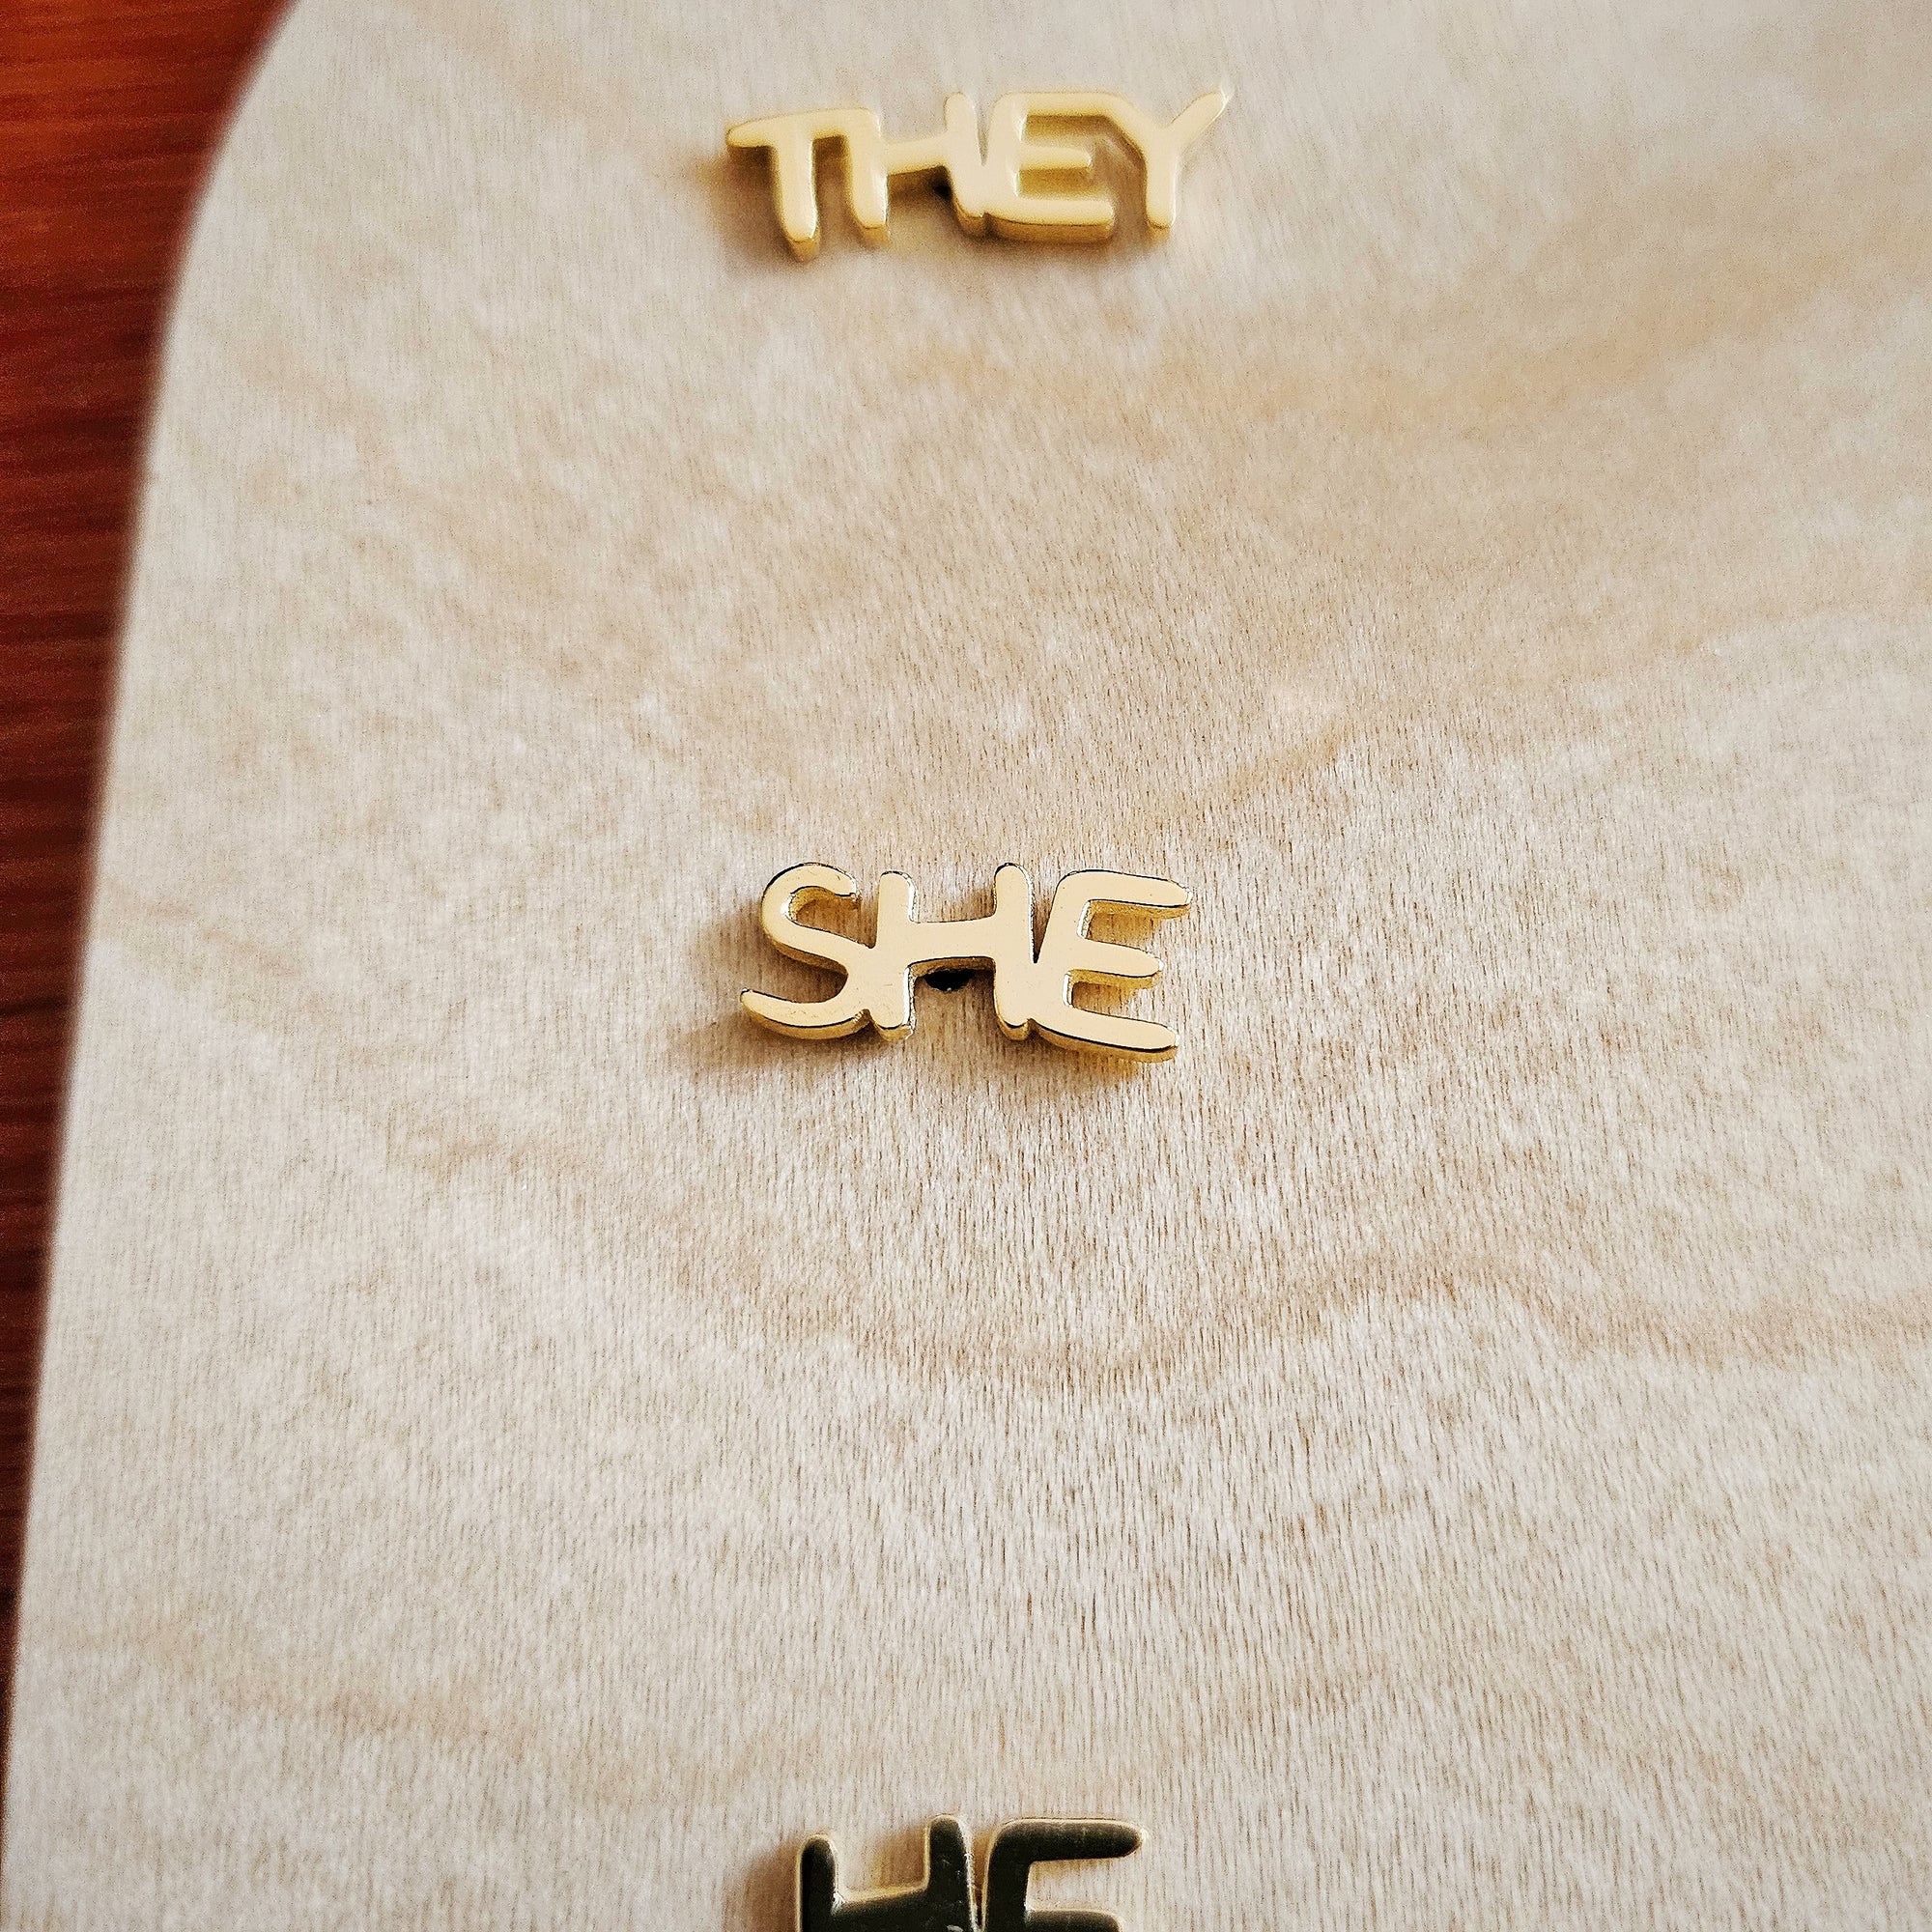 Gold Pronoun Stud Earrings - she/he or he/she